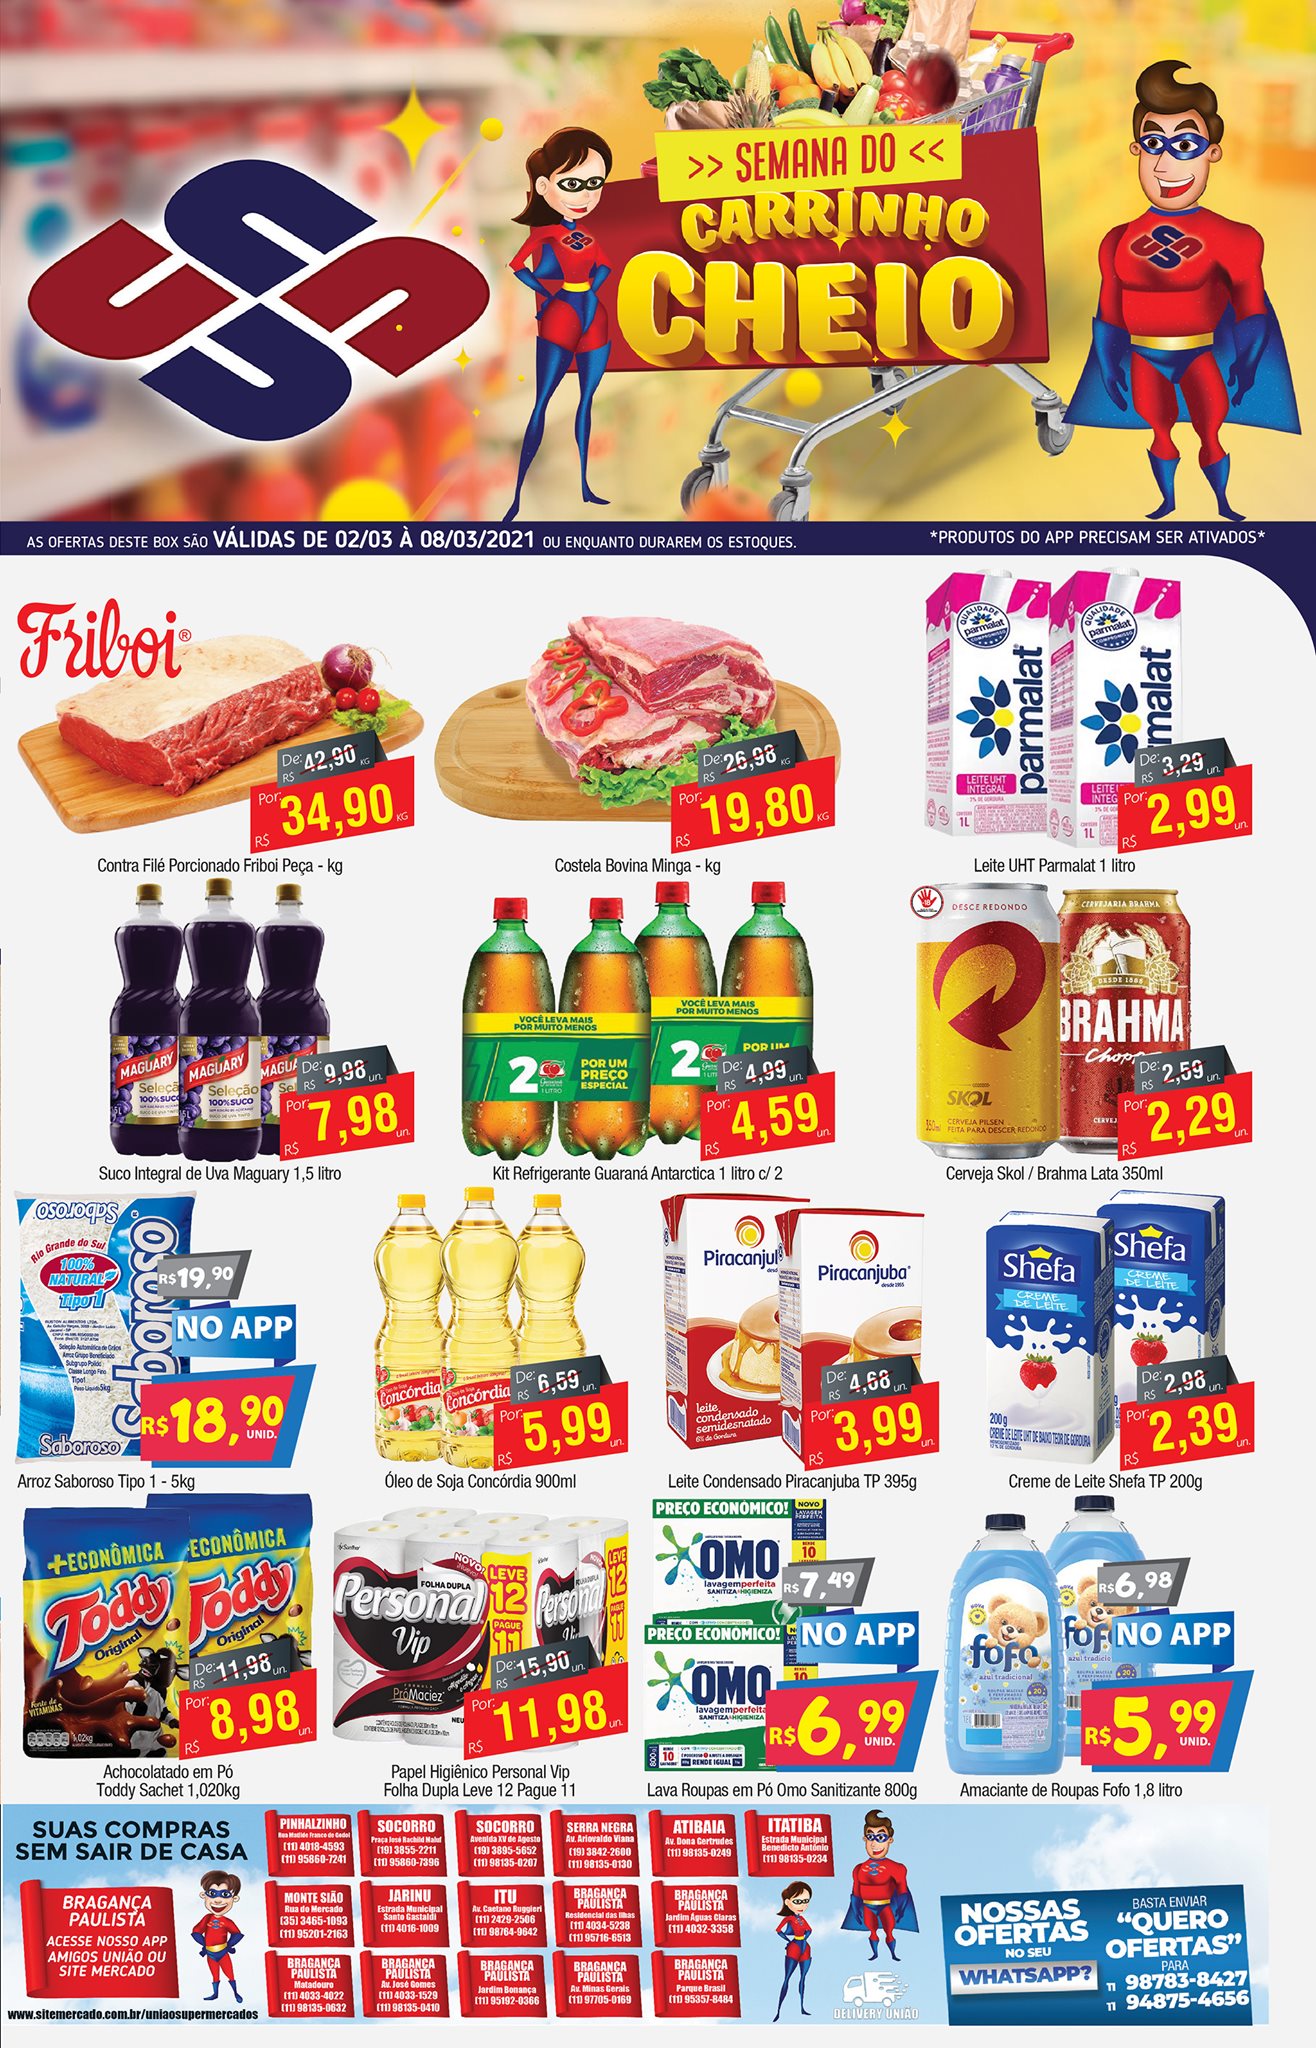 Semana Maluca do União Supermercados tem mais de 80 ofertas